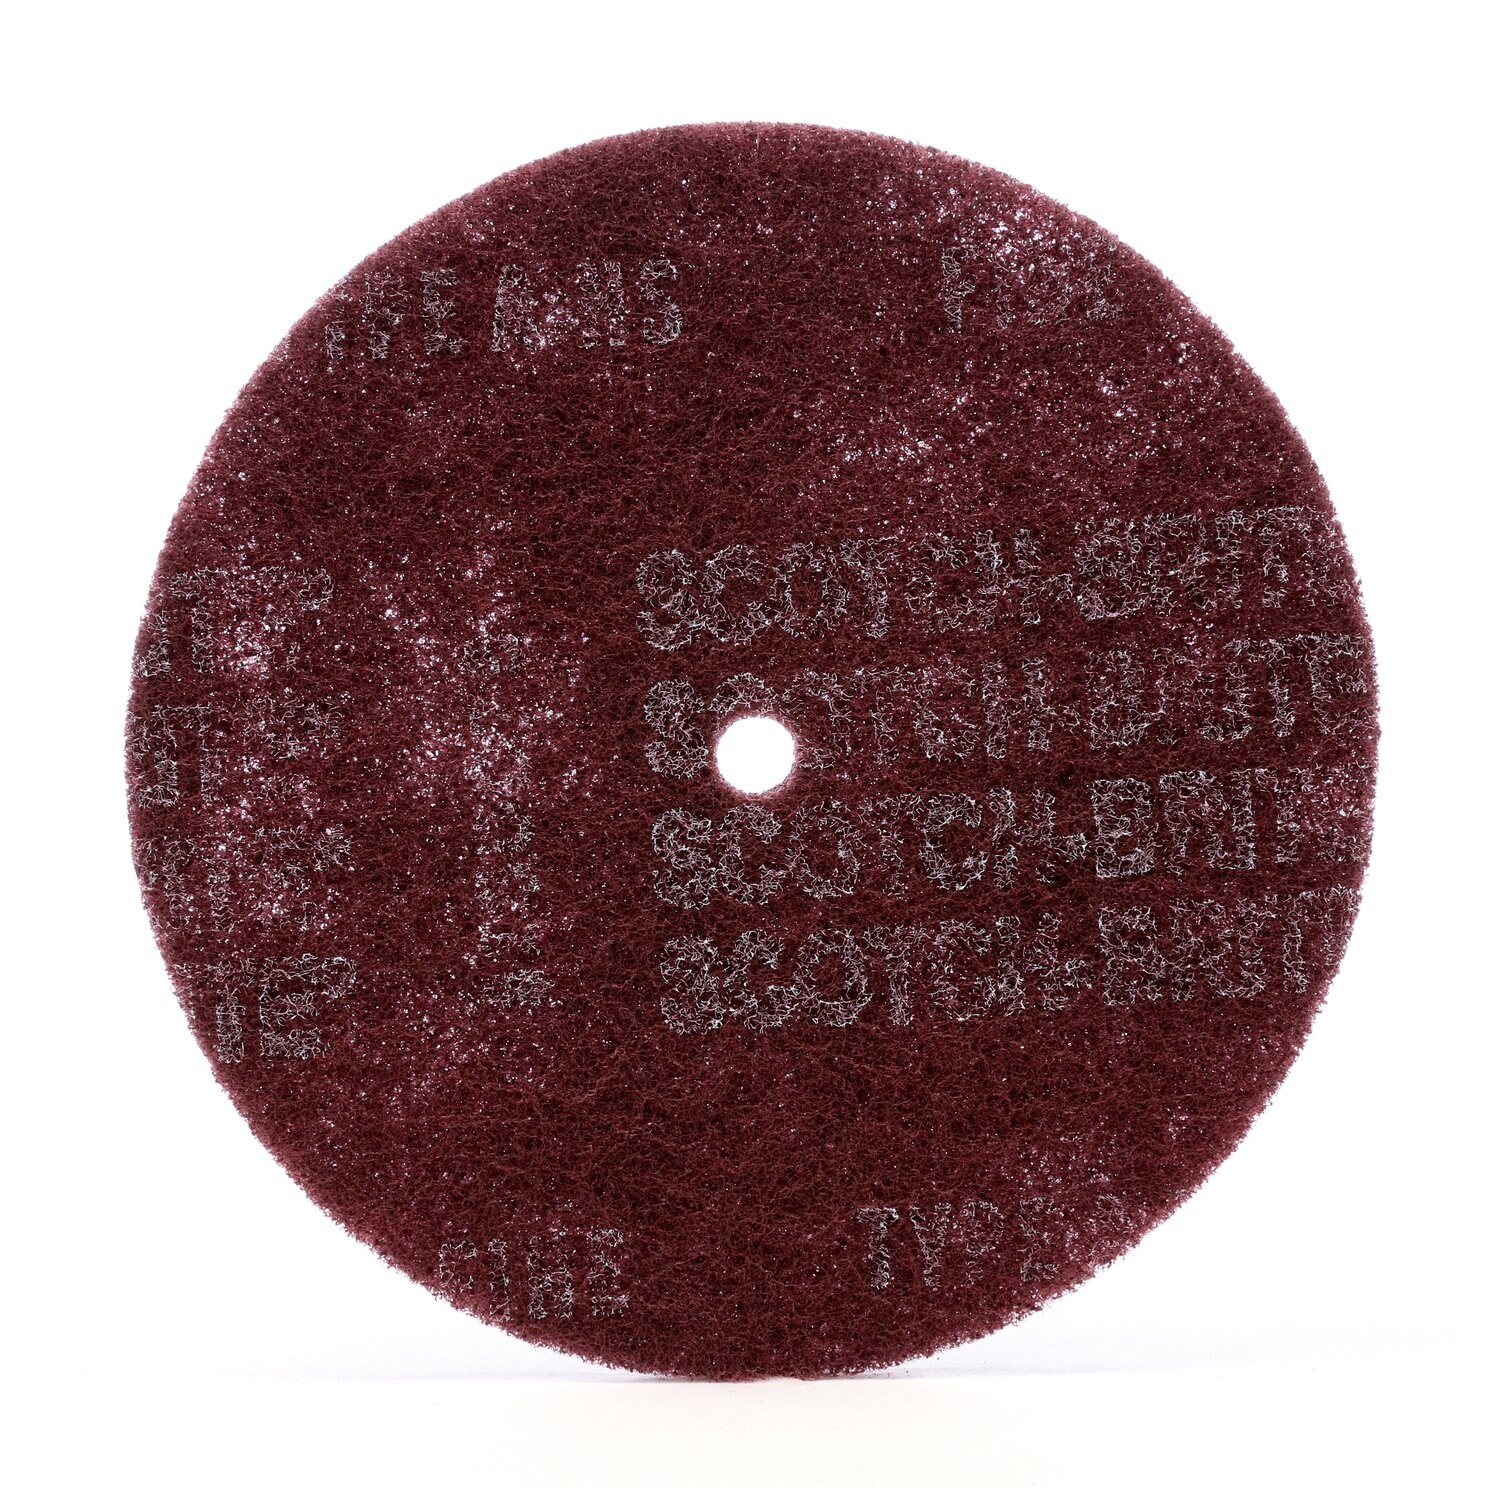 7000121006 - Scotch-Brite High Strength Disc, HS-DC, A/O Fine, 8 in x 1/2 in, 50
ea/Case